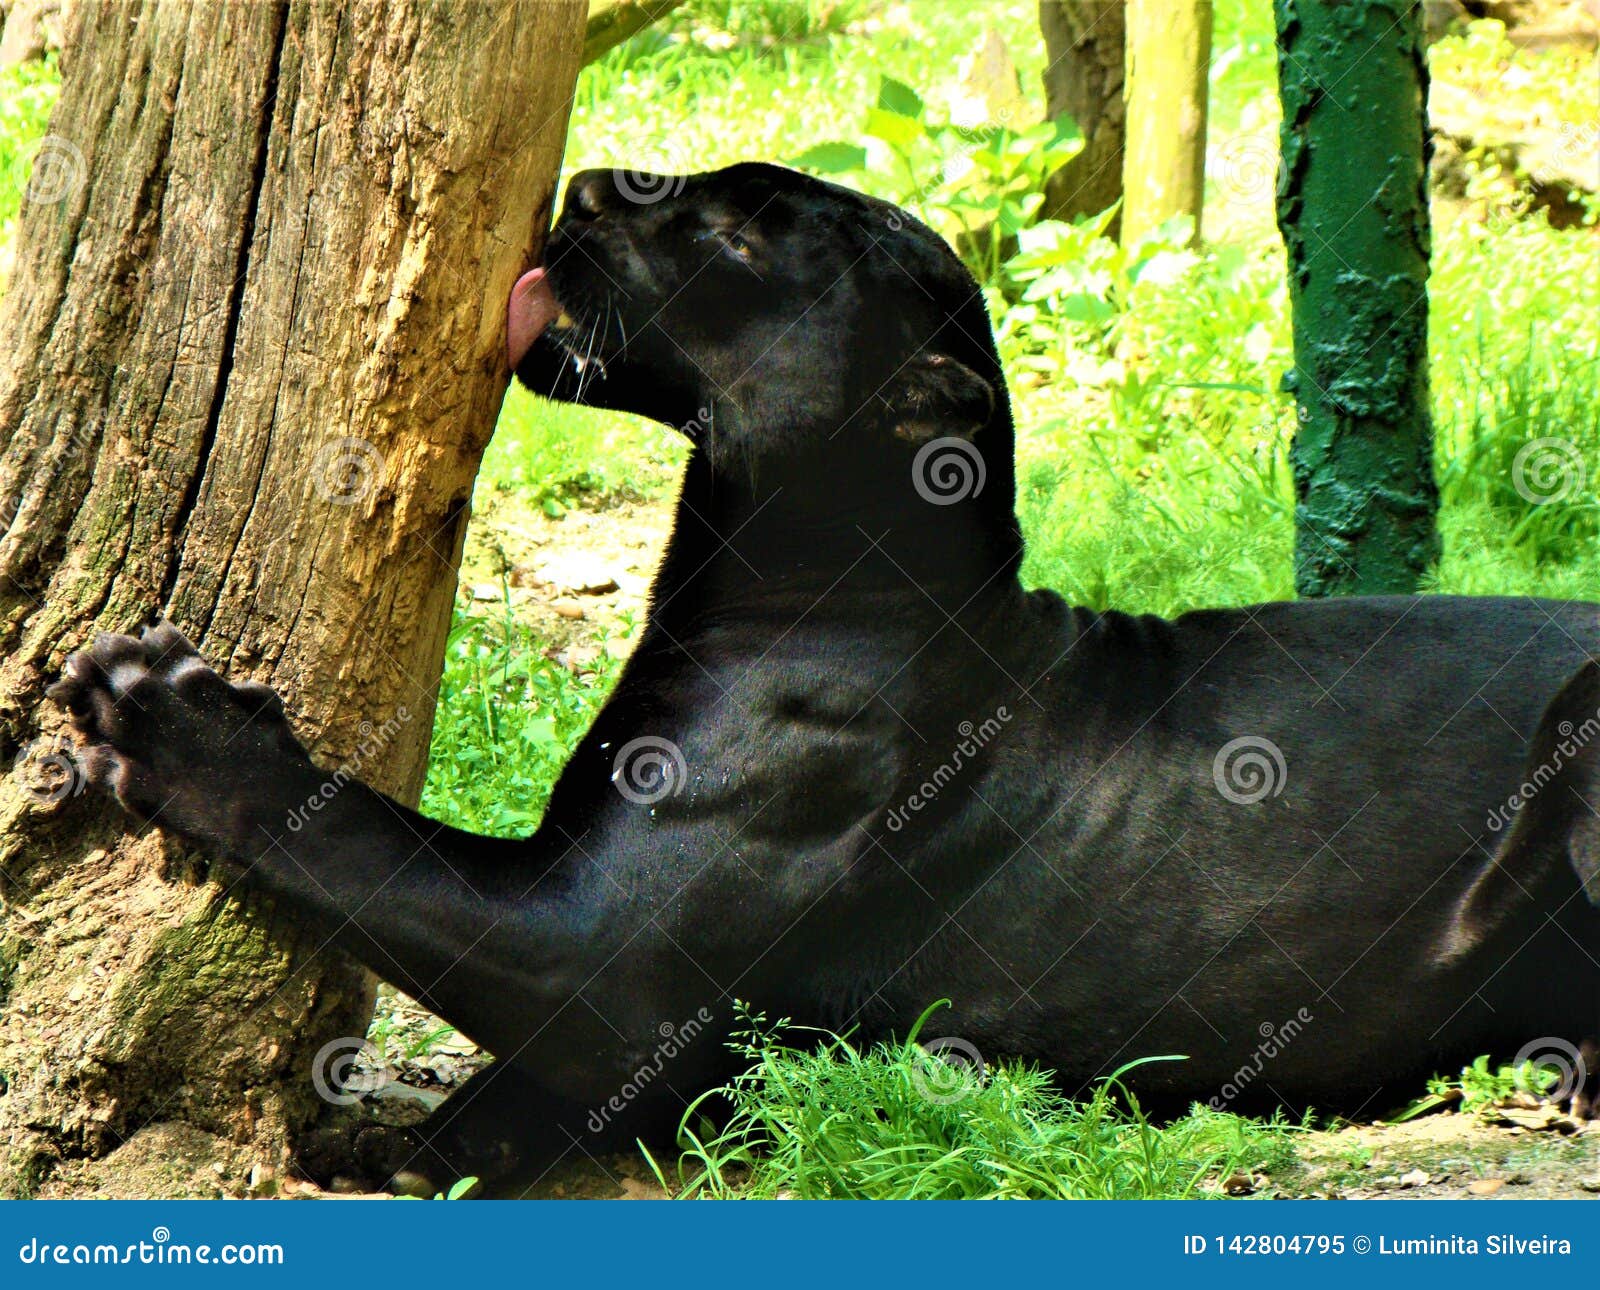 black puma images